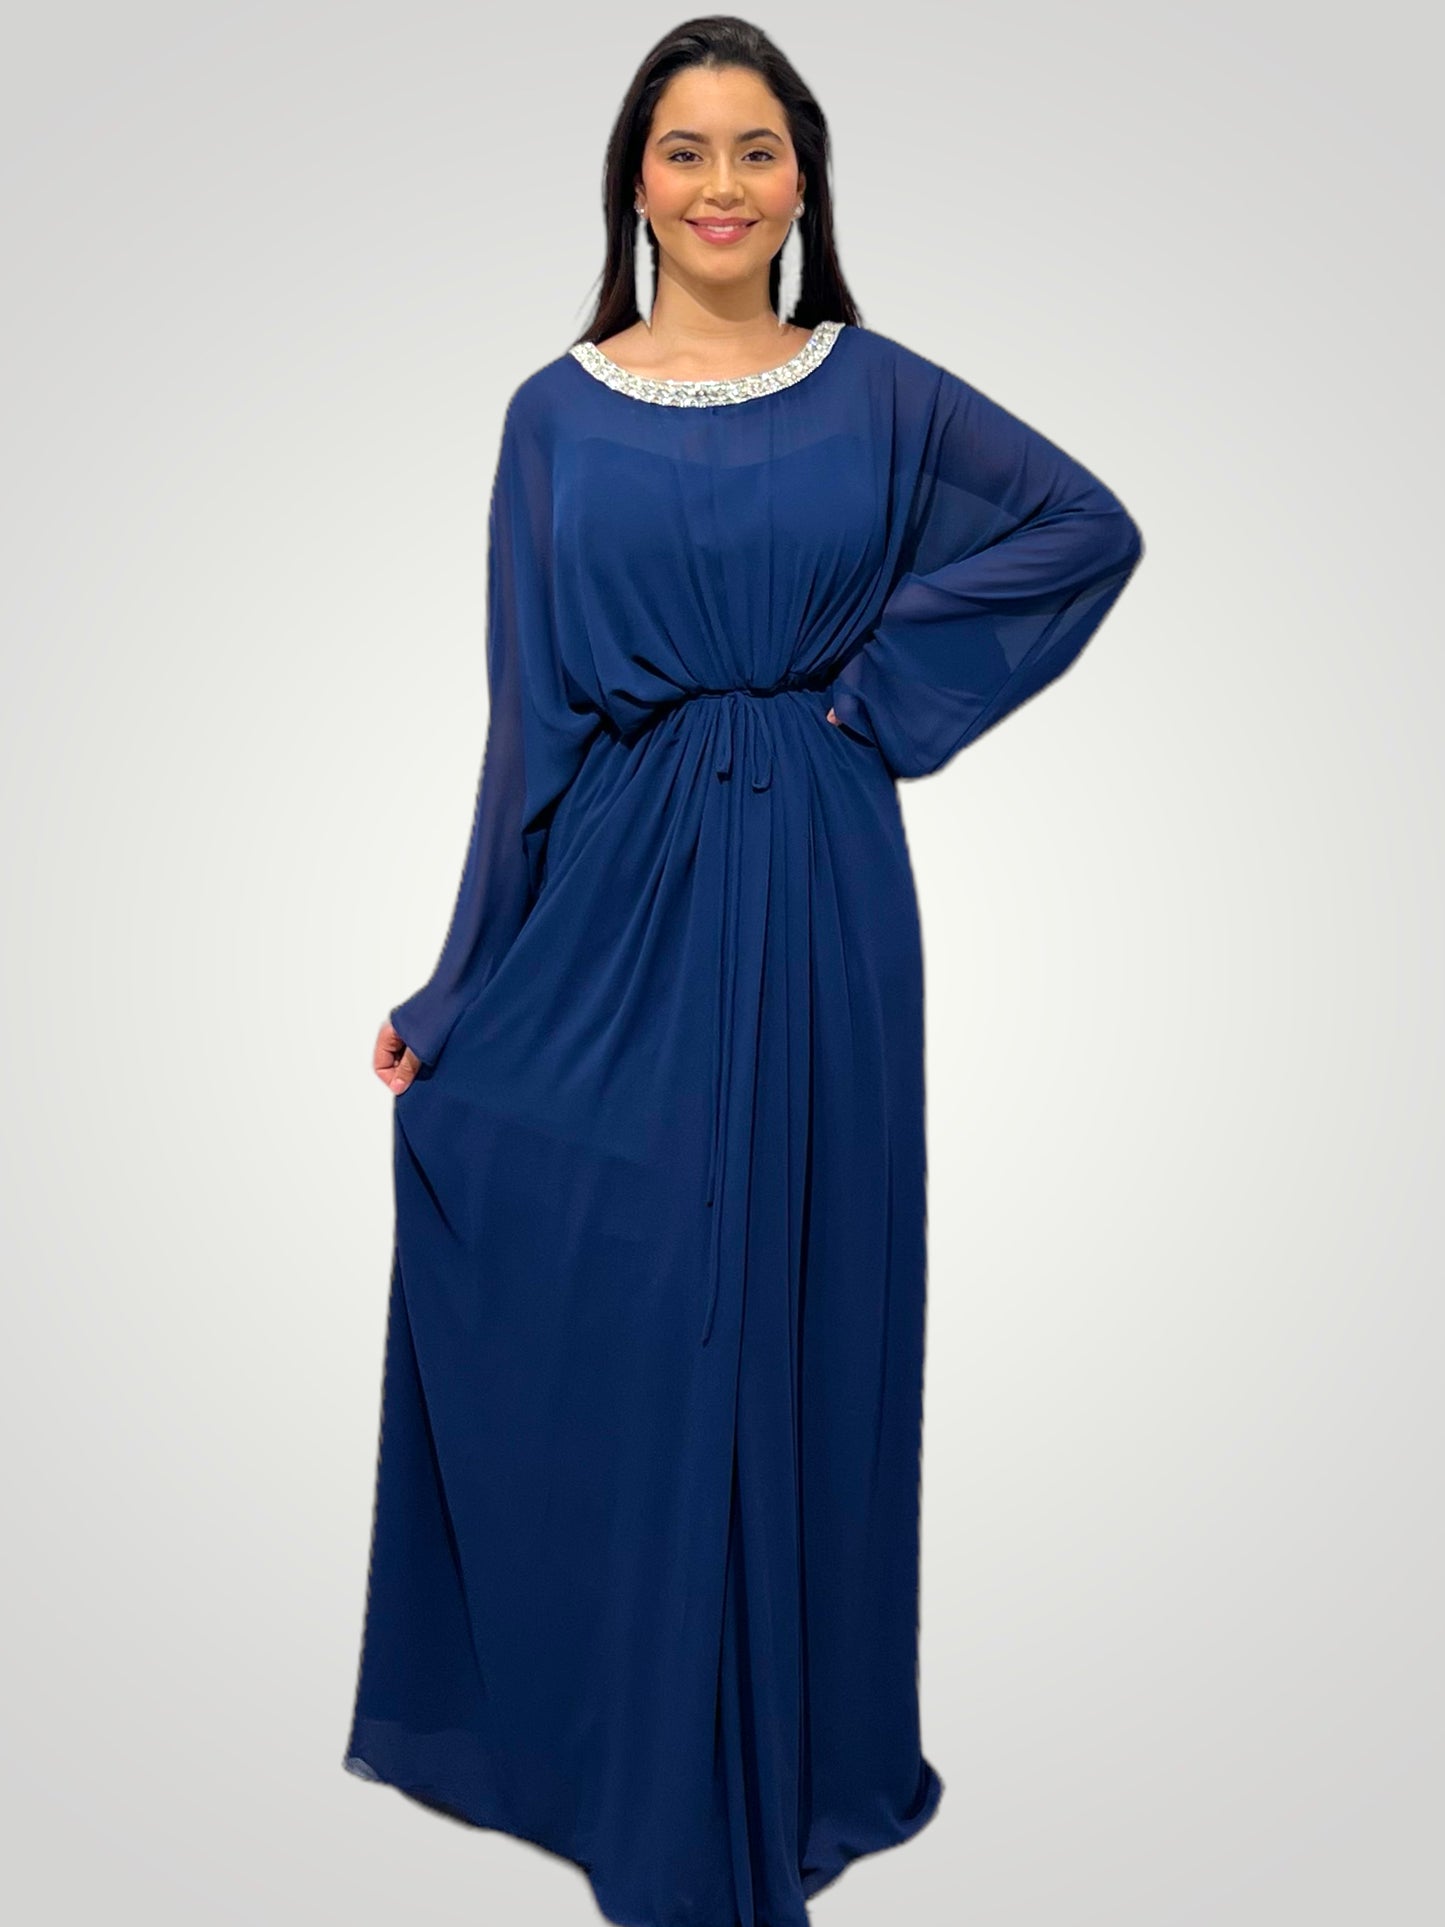 Robe de Soirée "Hijab" by Amircouture – Élégance et Raffinement - AmirCouture 